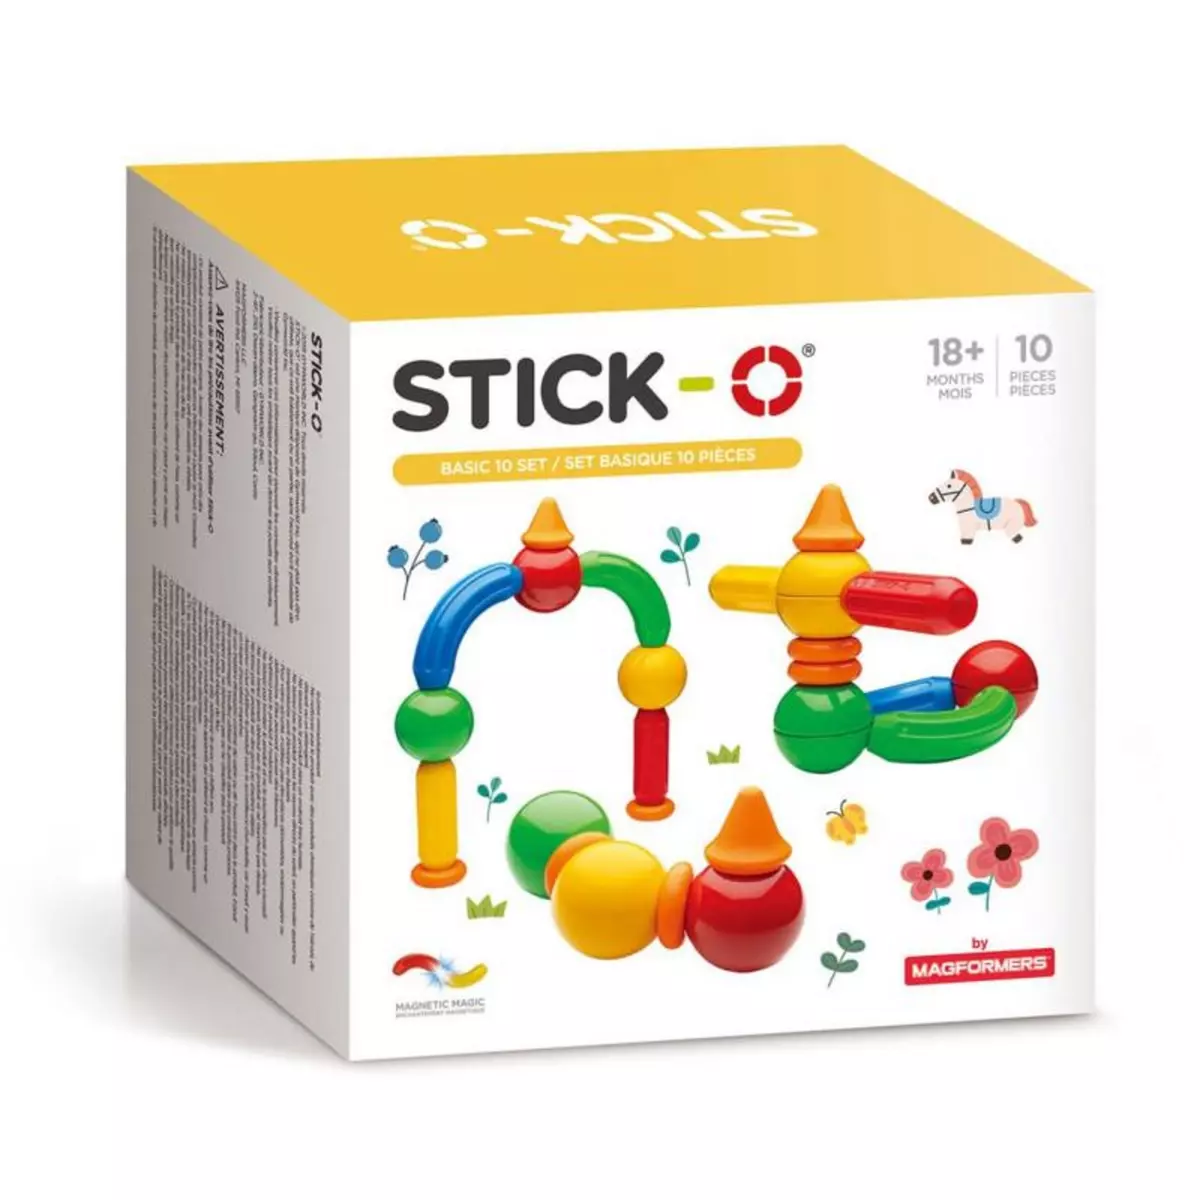 STICK-O Stick-O set basic 10 pièces